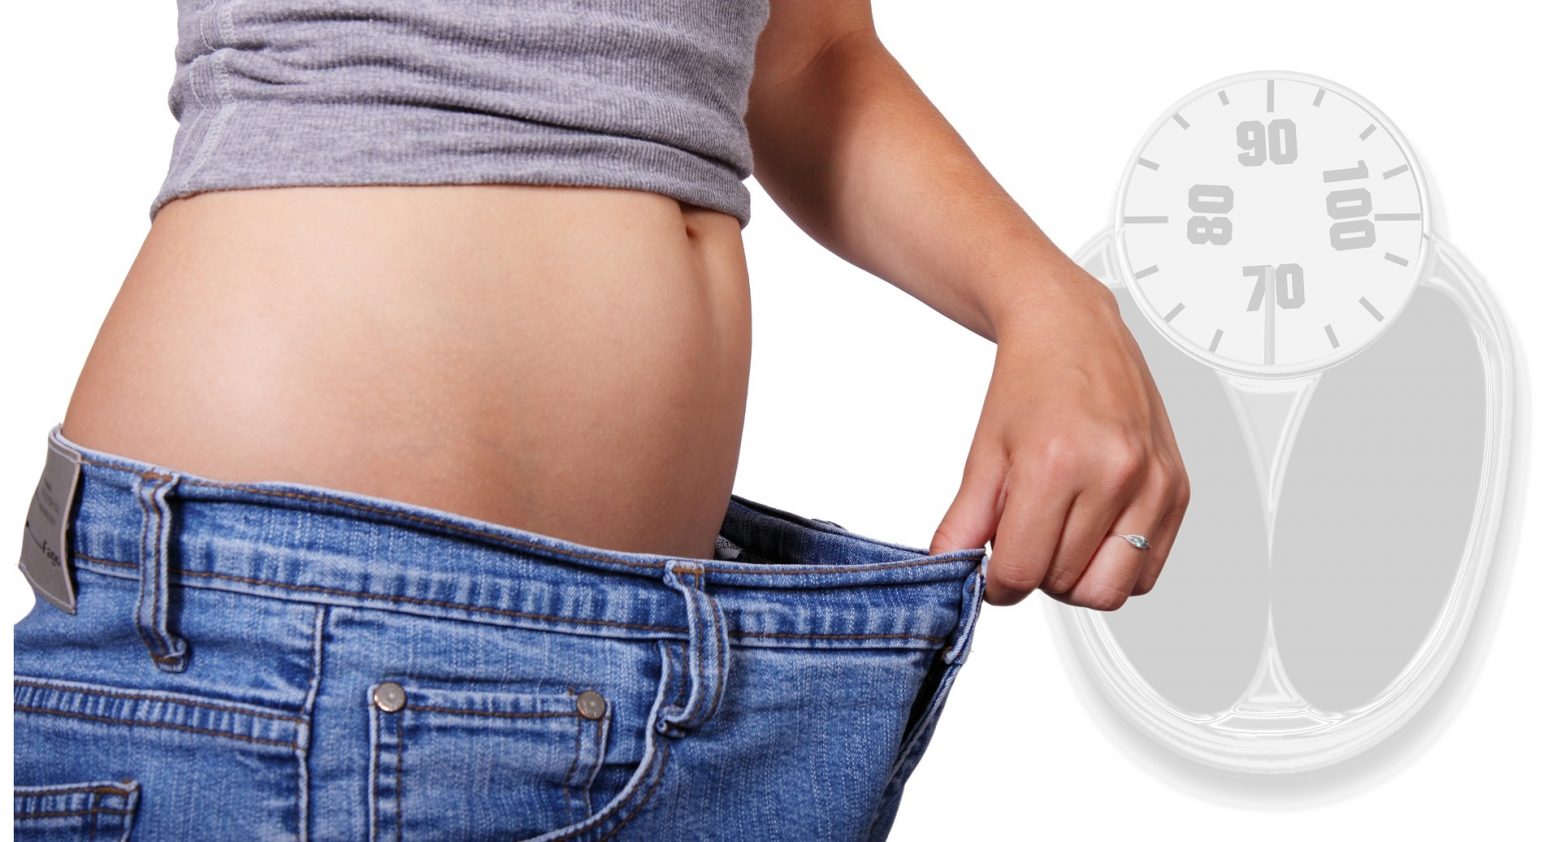 Απώλεια βάρους - Τι είναι το φαινόμενο «γιο-γιο» και πώς αντιμετωπίζεται